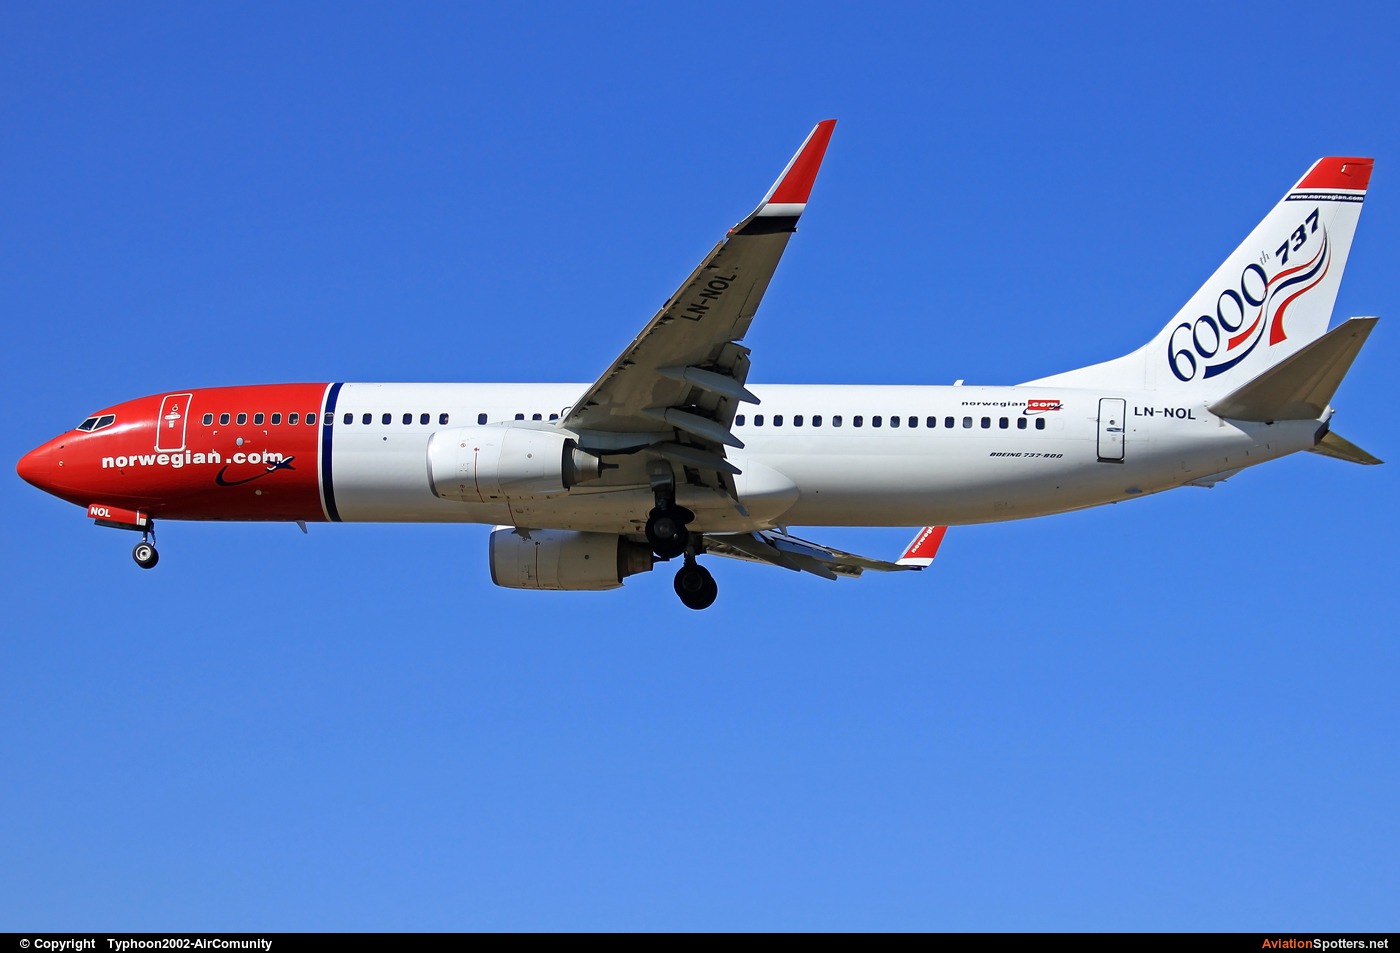 Norwegian Air Shuttle  -  737-800  (LN-NOL) By Typhoon2002-AirComunity (AirComunity)